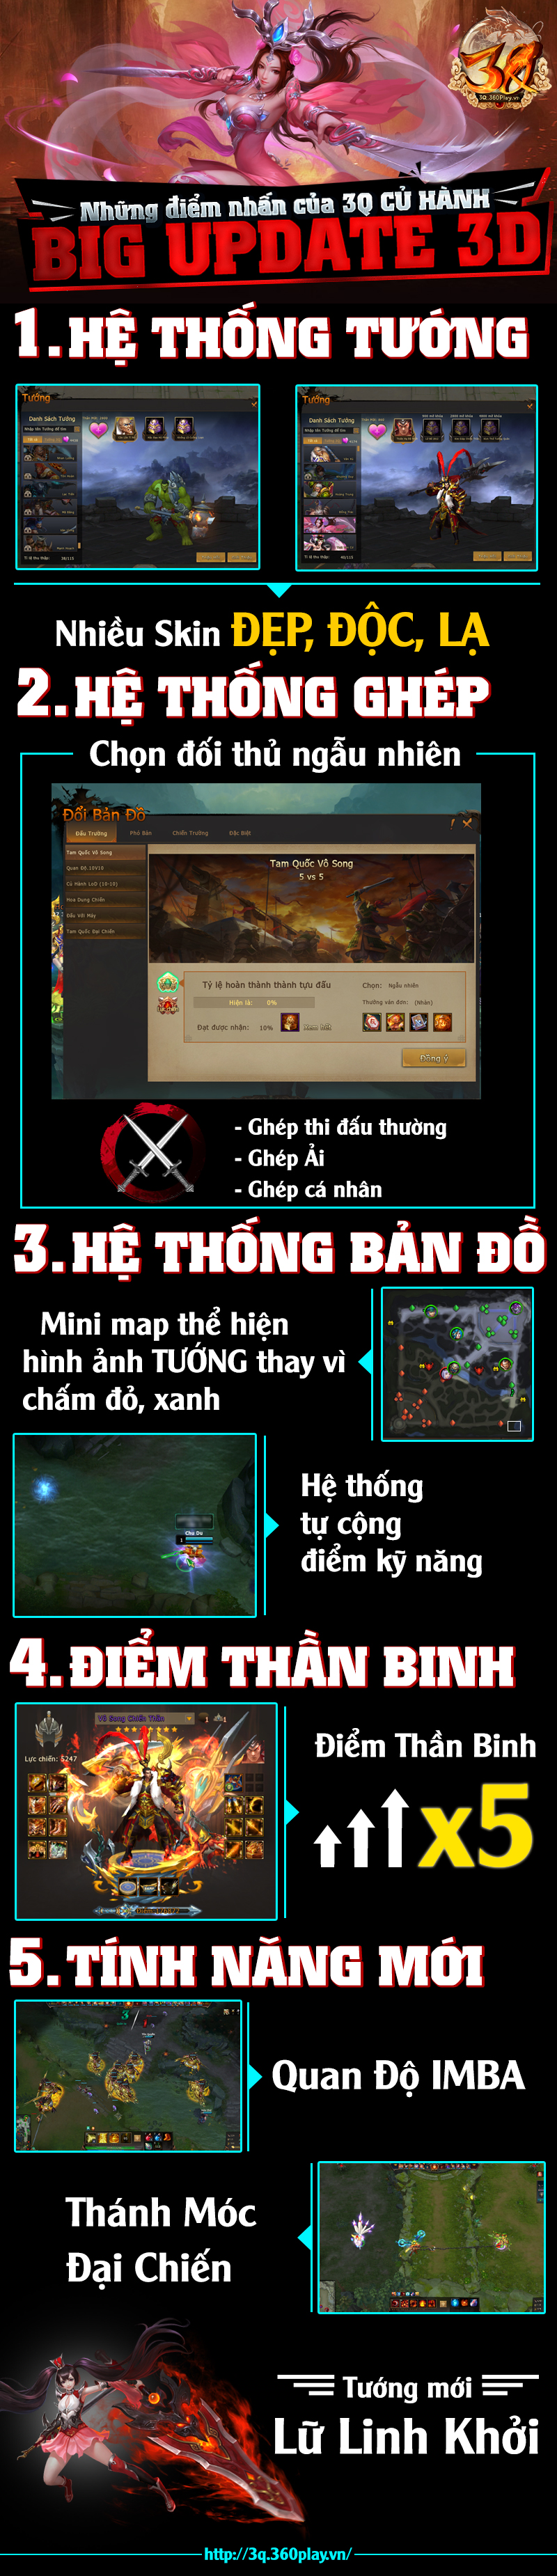 3q-cu-hanh-ban-3d-update-1.jpg (800×3700)